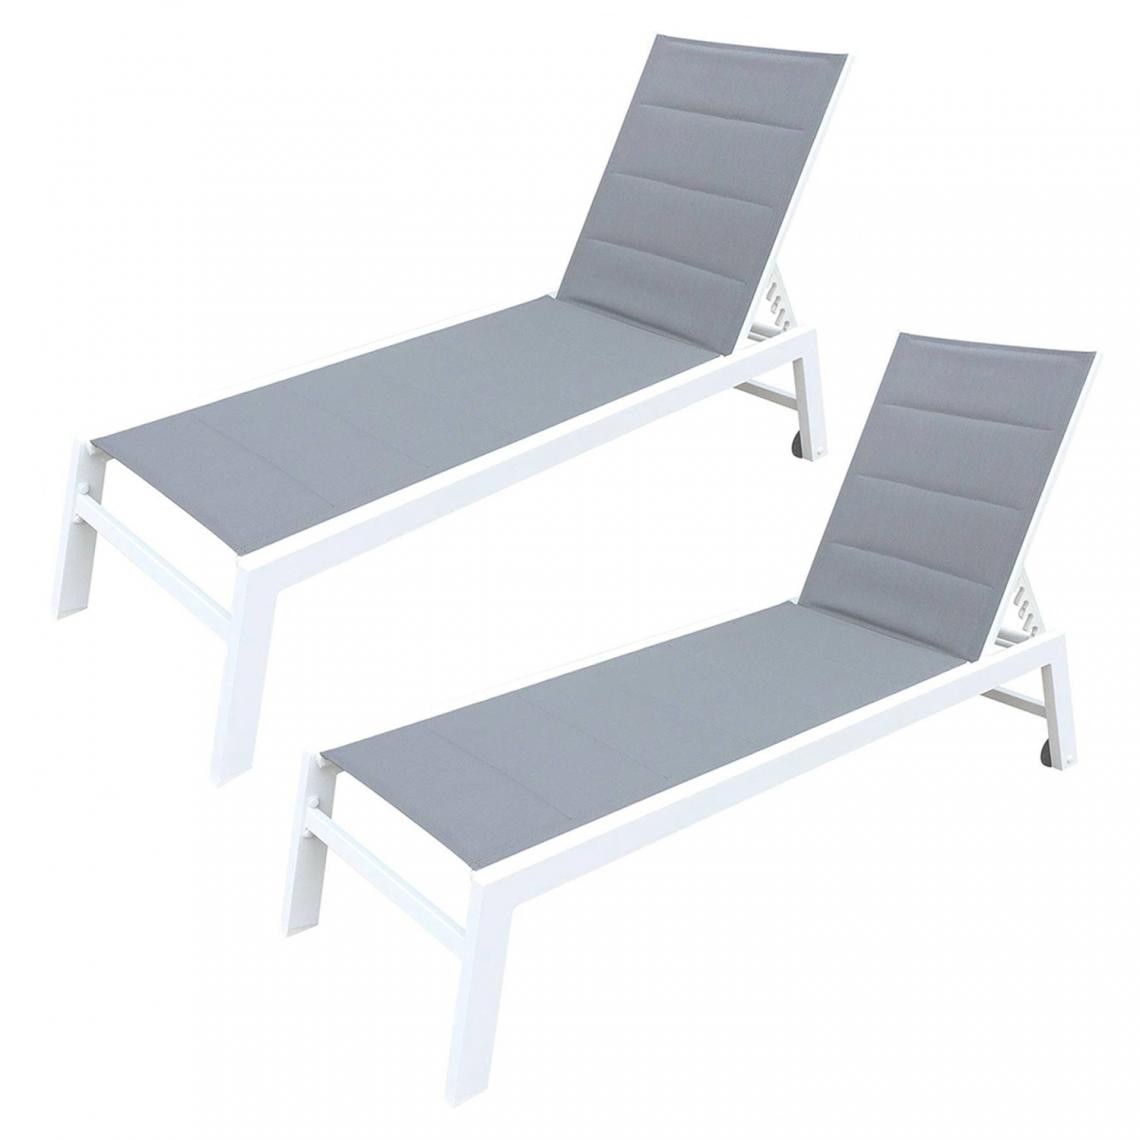 Beneffito - BAISAO - Bain de Soleil Droit Textilène Aluminium - GRIS/BLANC - X2 - Transats, chaises longues